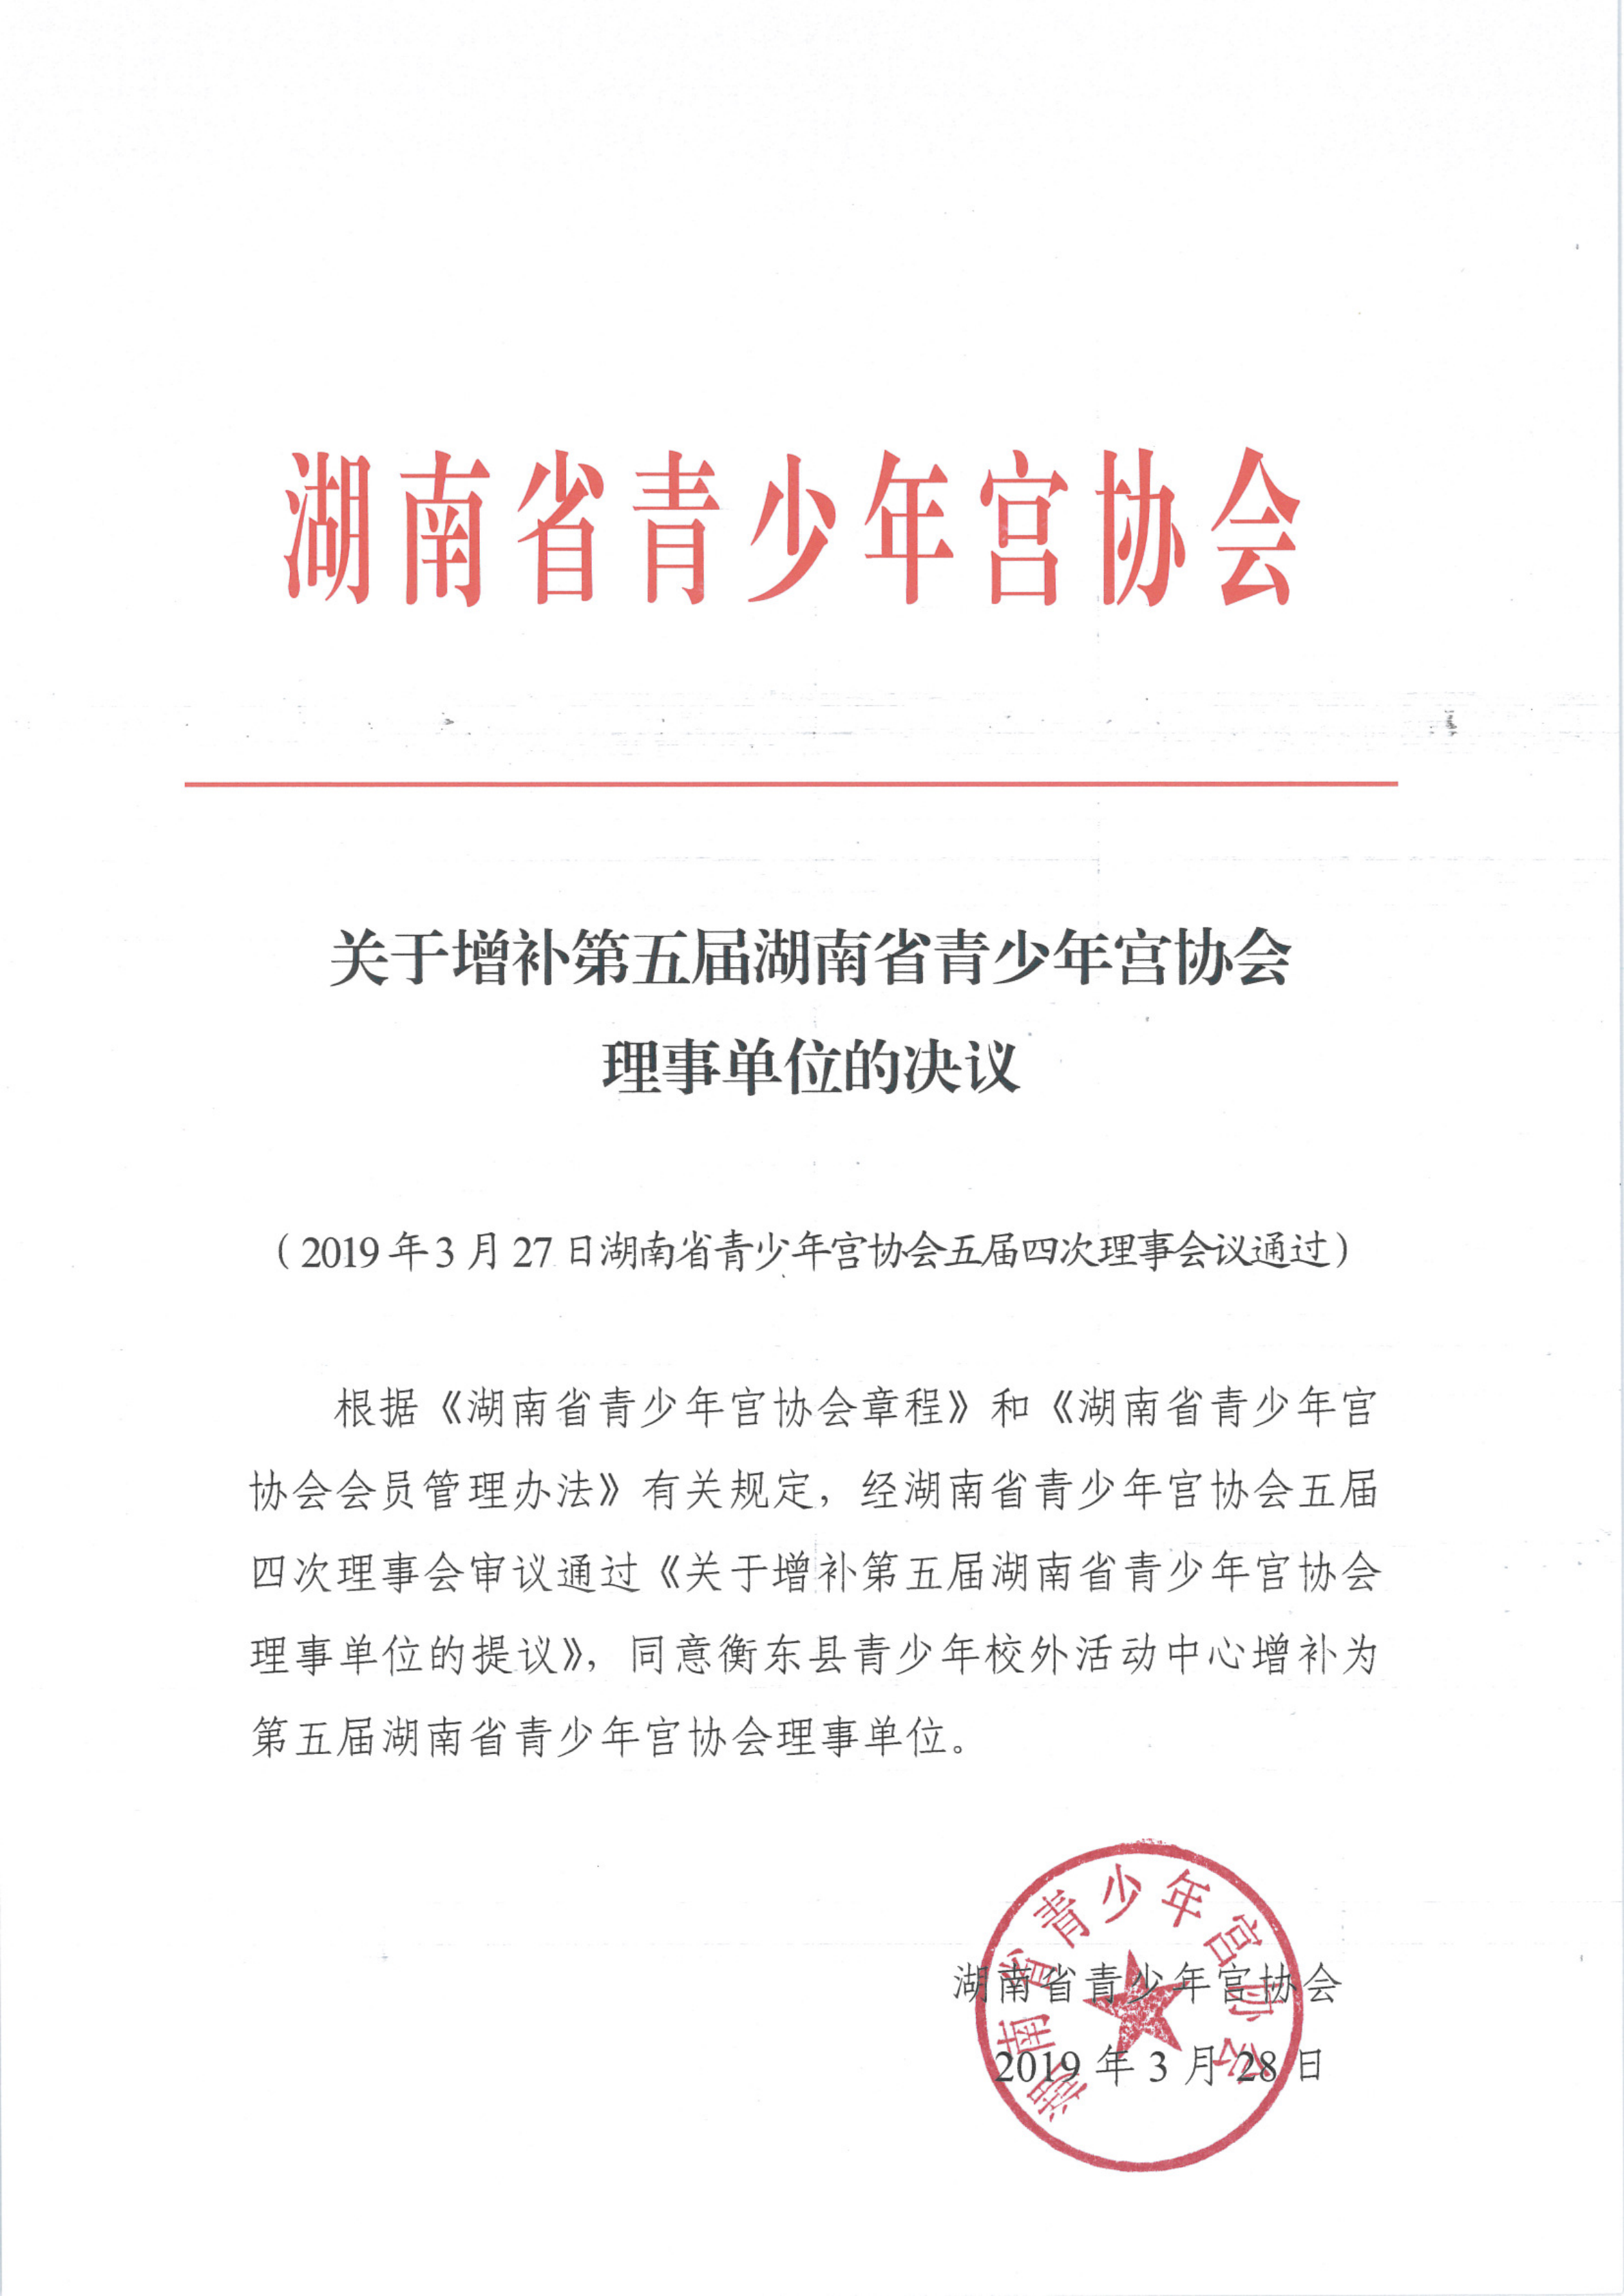 关于增补第五届省青宫协理事单位的决议_00.png